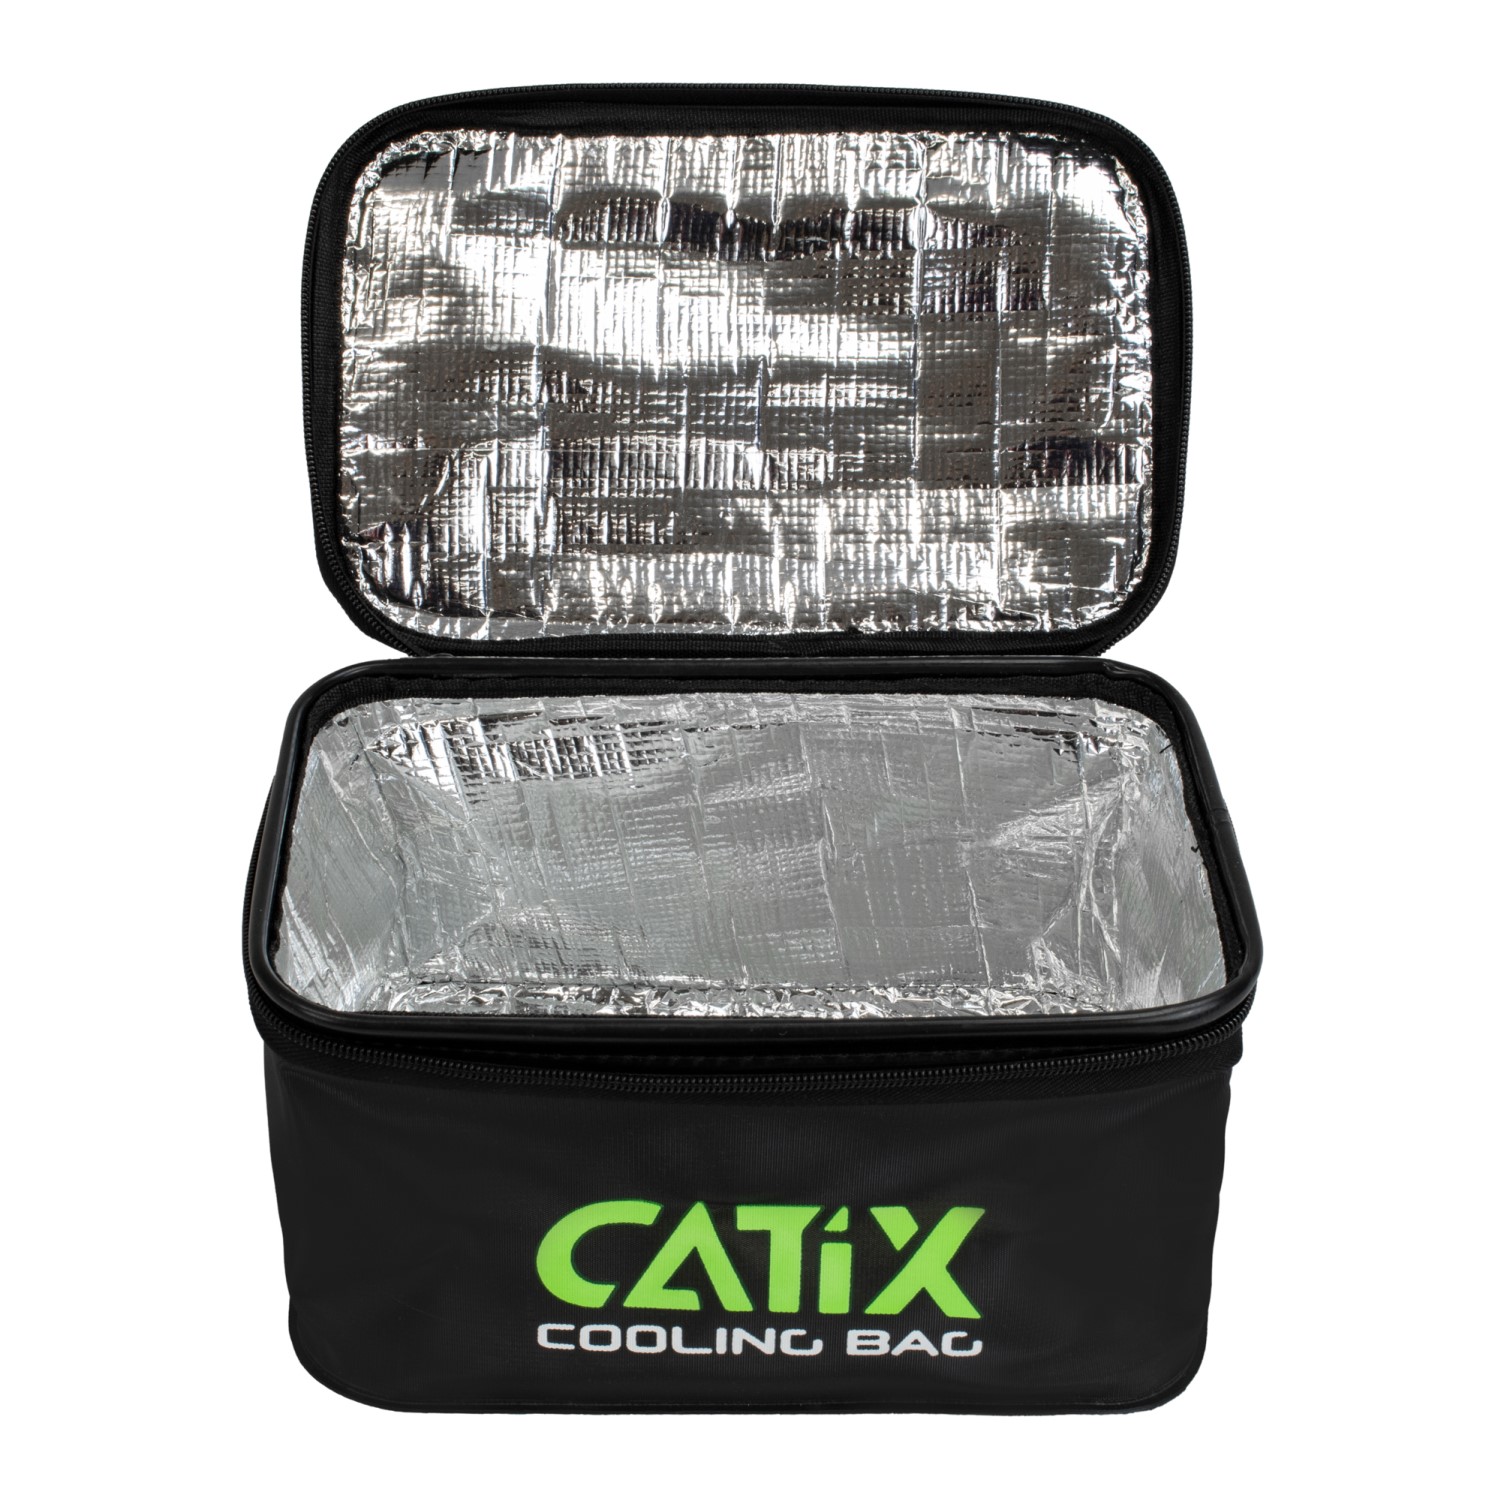 Catix-Kühltasche 27x15x21cm